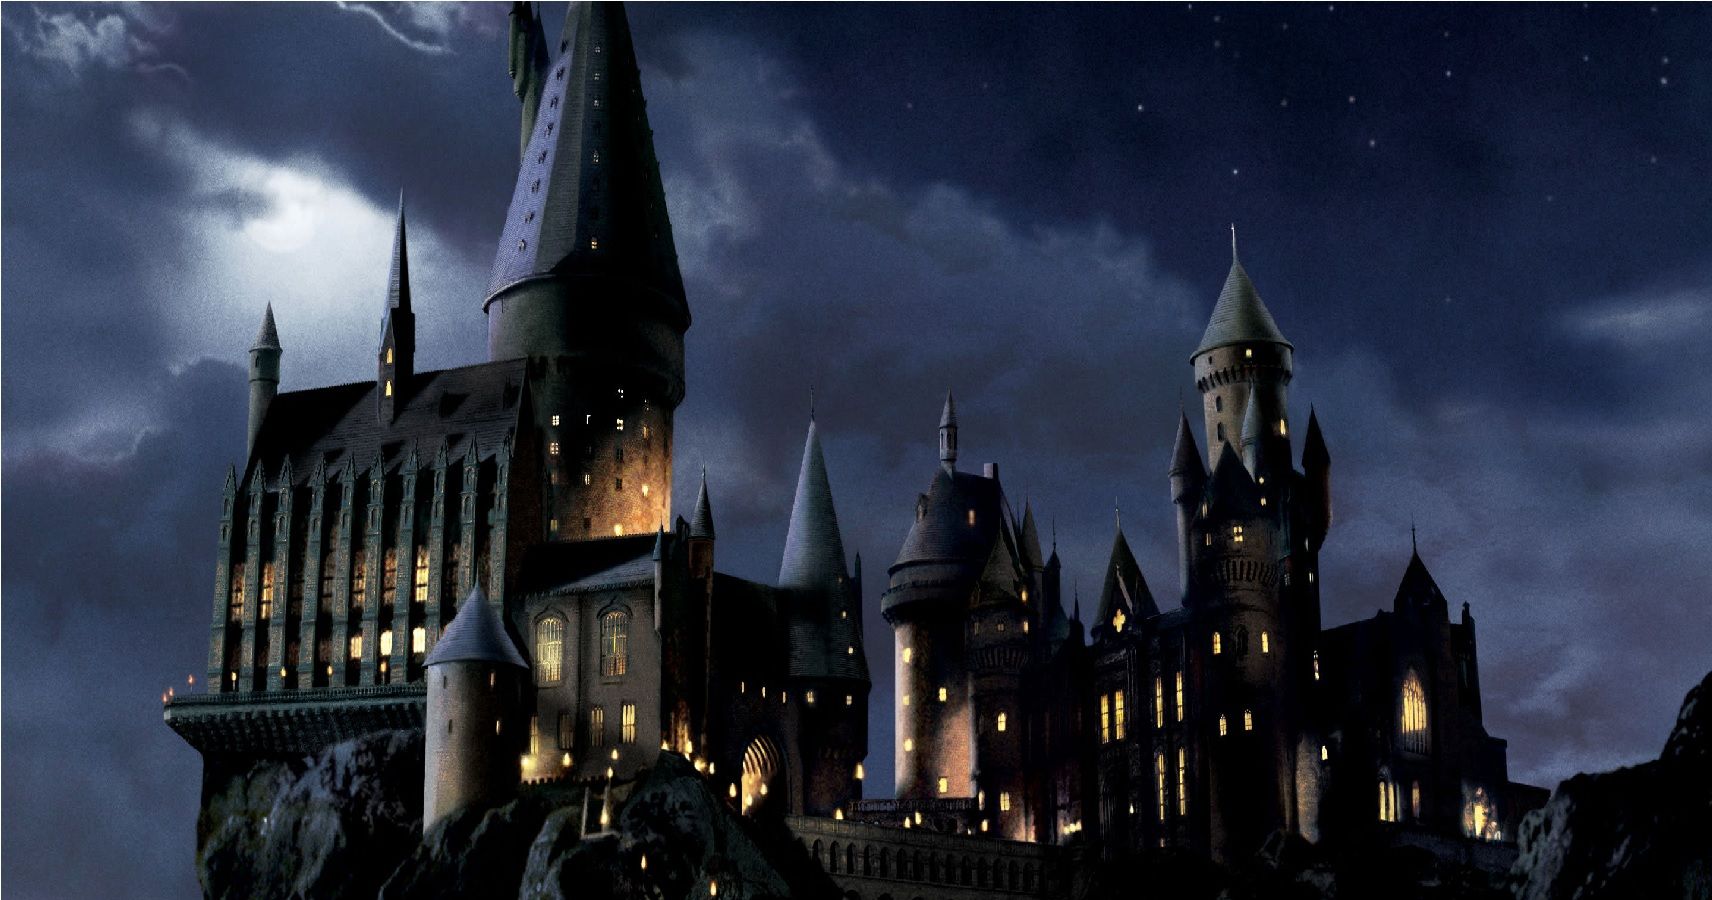 hogwarts legacy switch screenshots